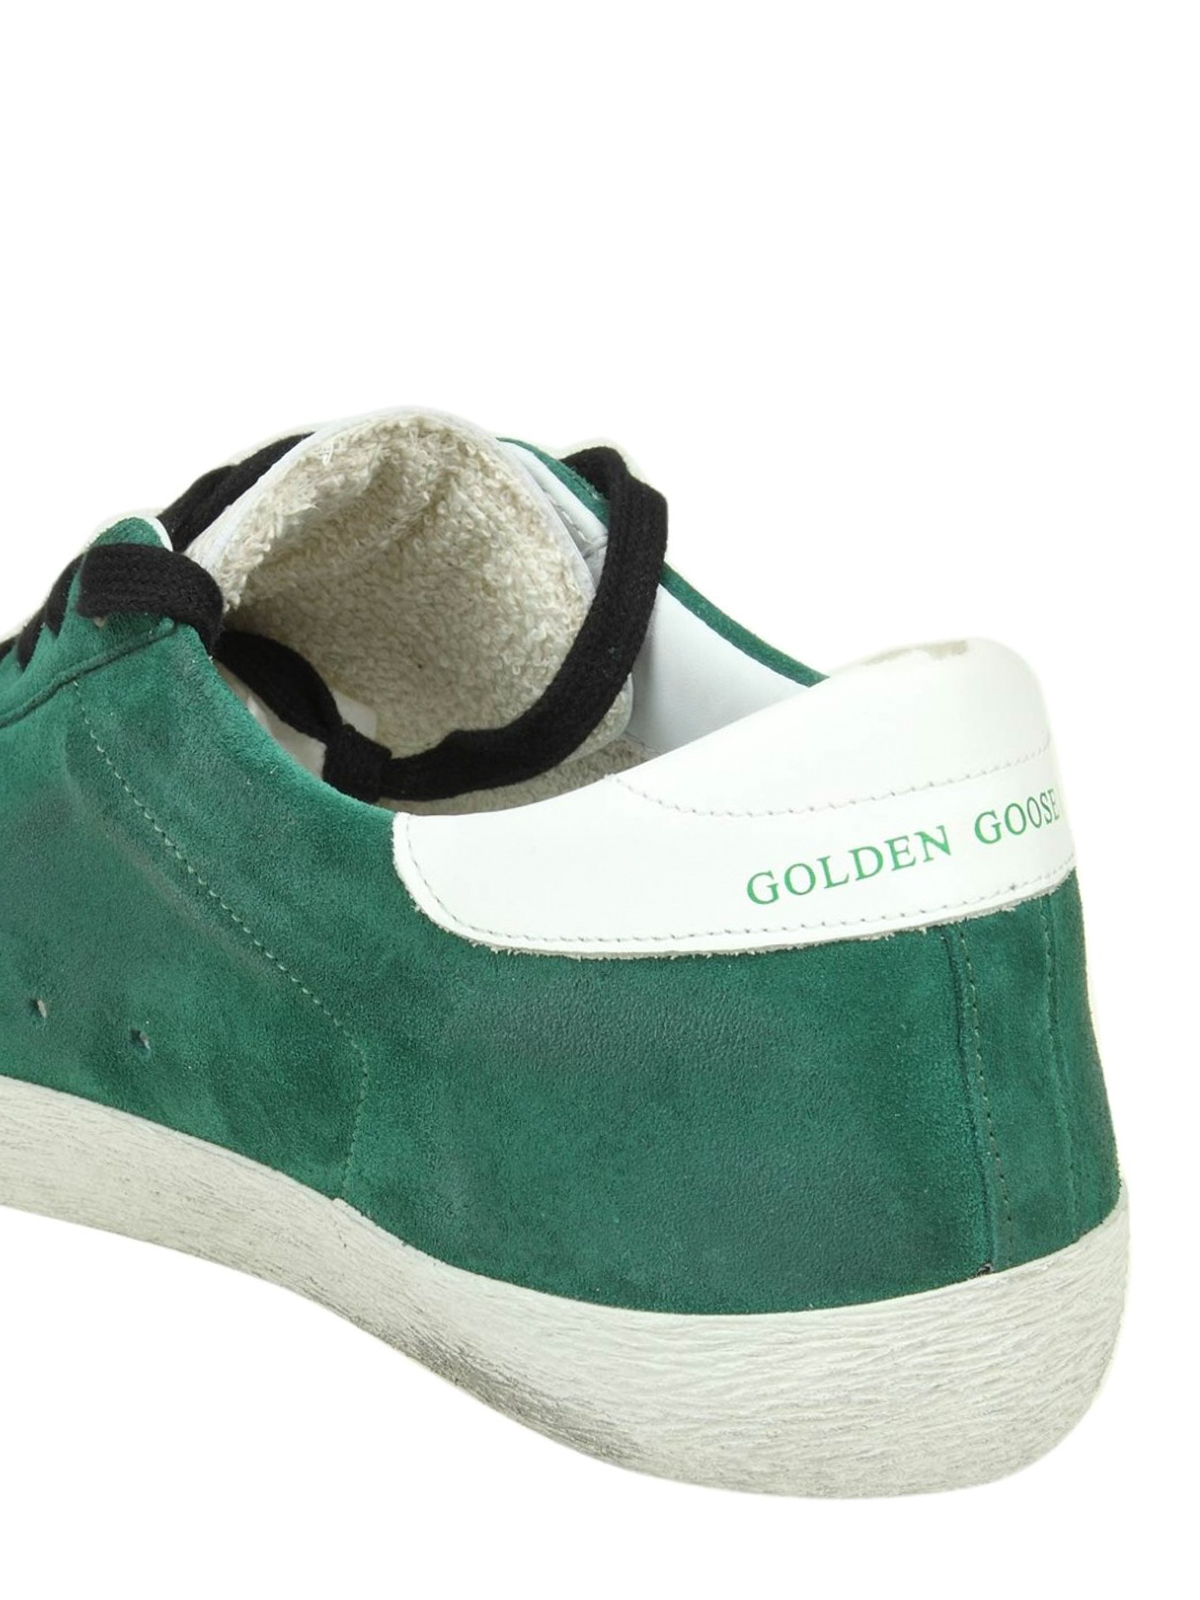 golden goose superstar suede sneakers